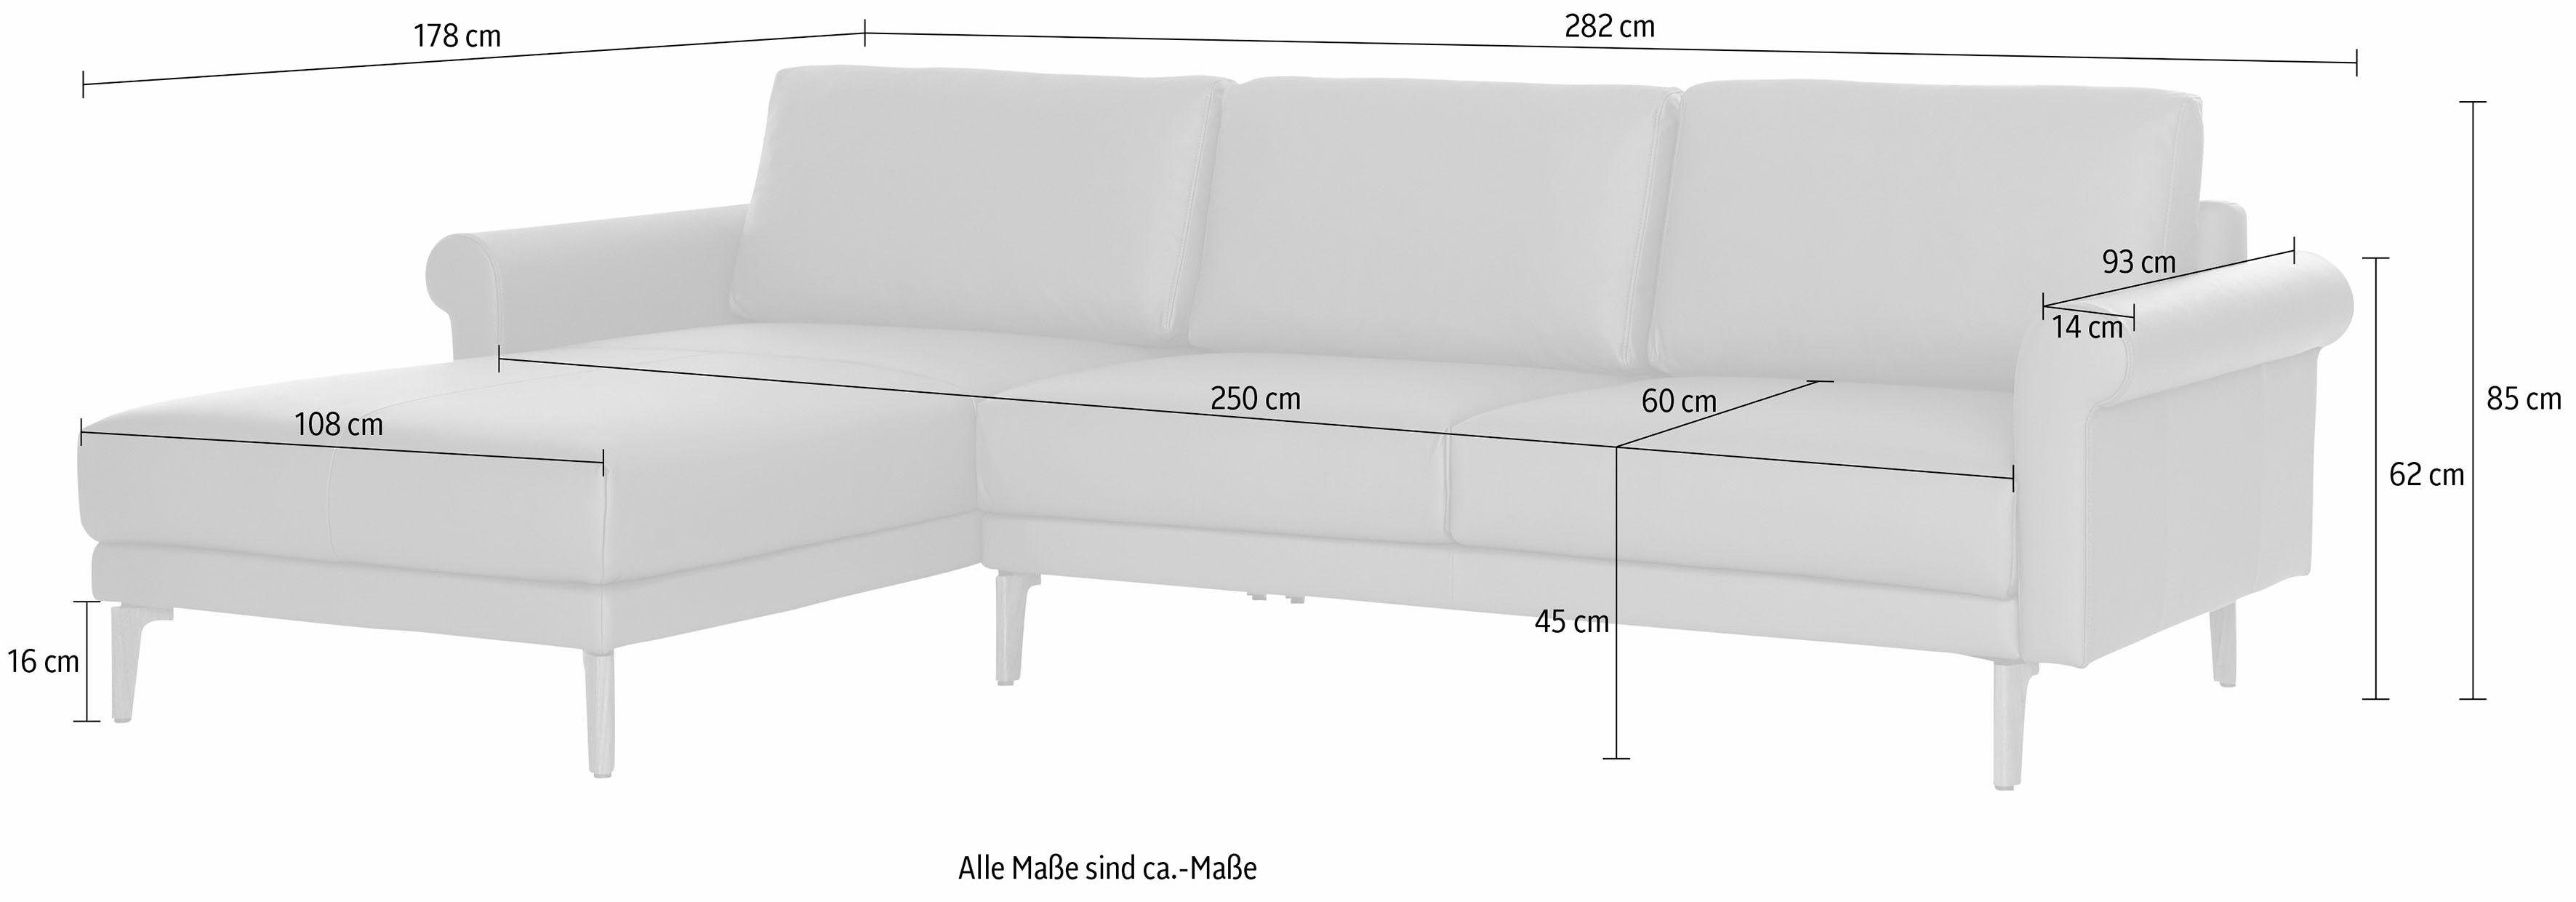 hülsta sofa Ecksofa hs.450, Armlehne Schnecke Landhaus, cm, 282 Breite Fuß Nussbaum modern